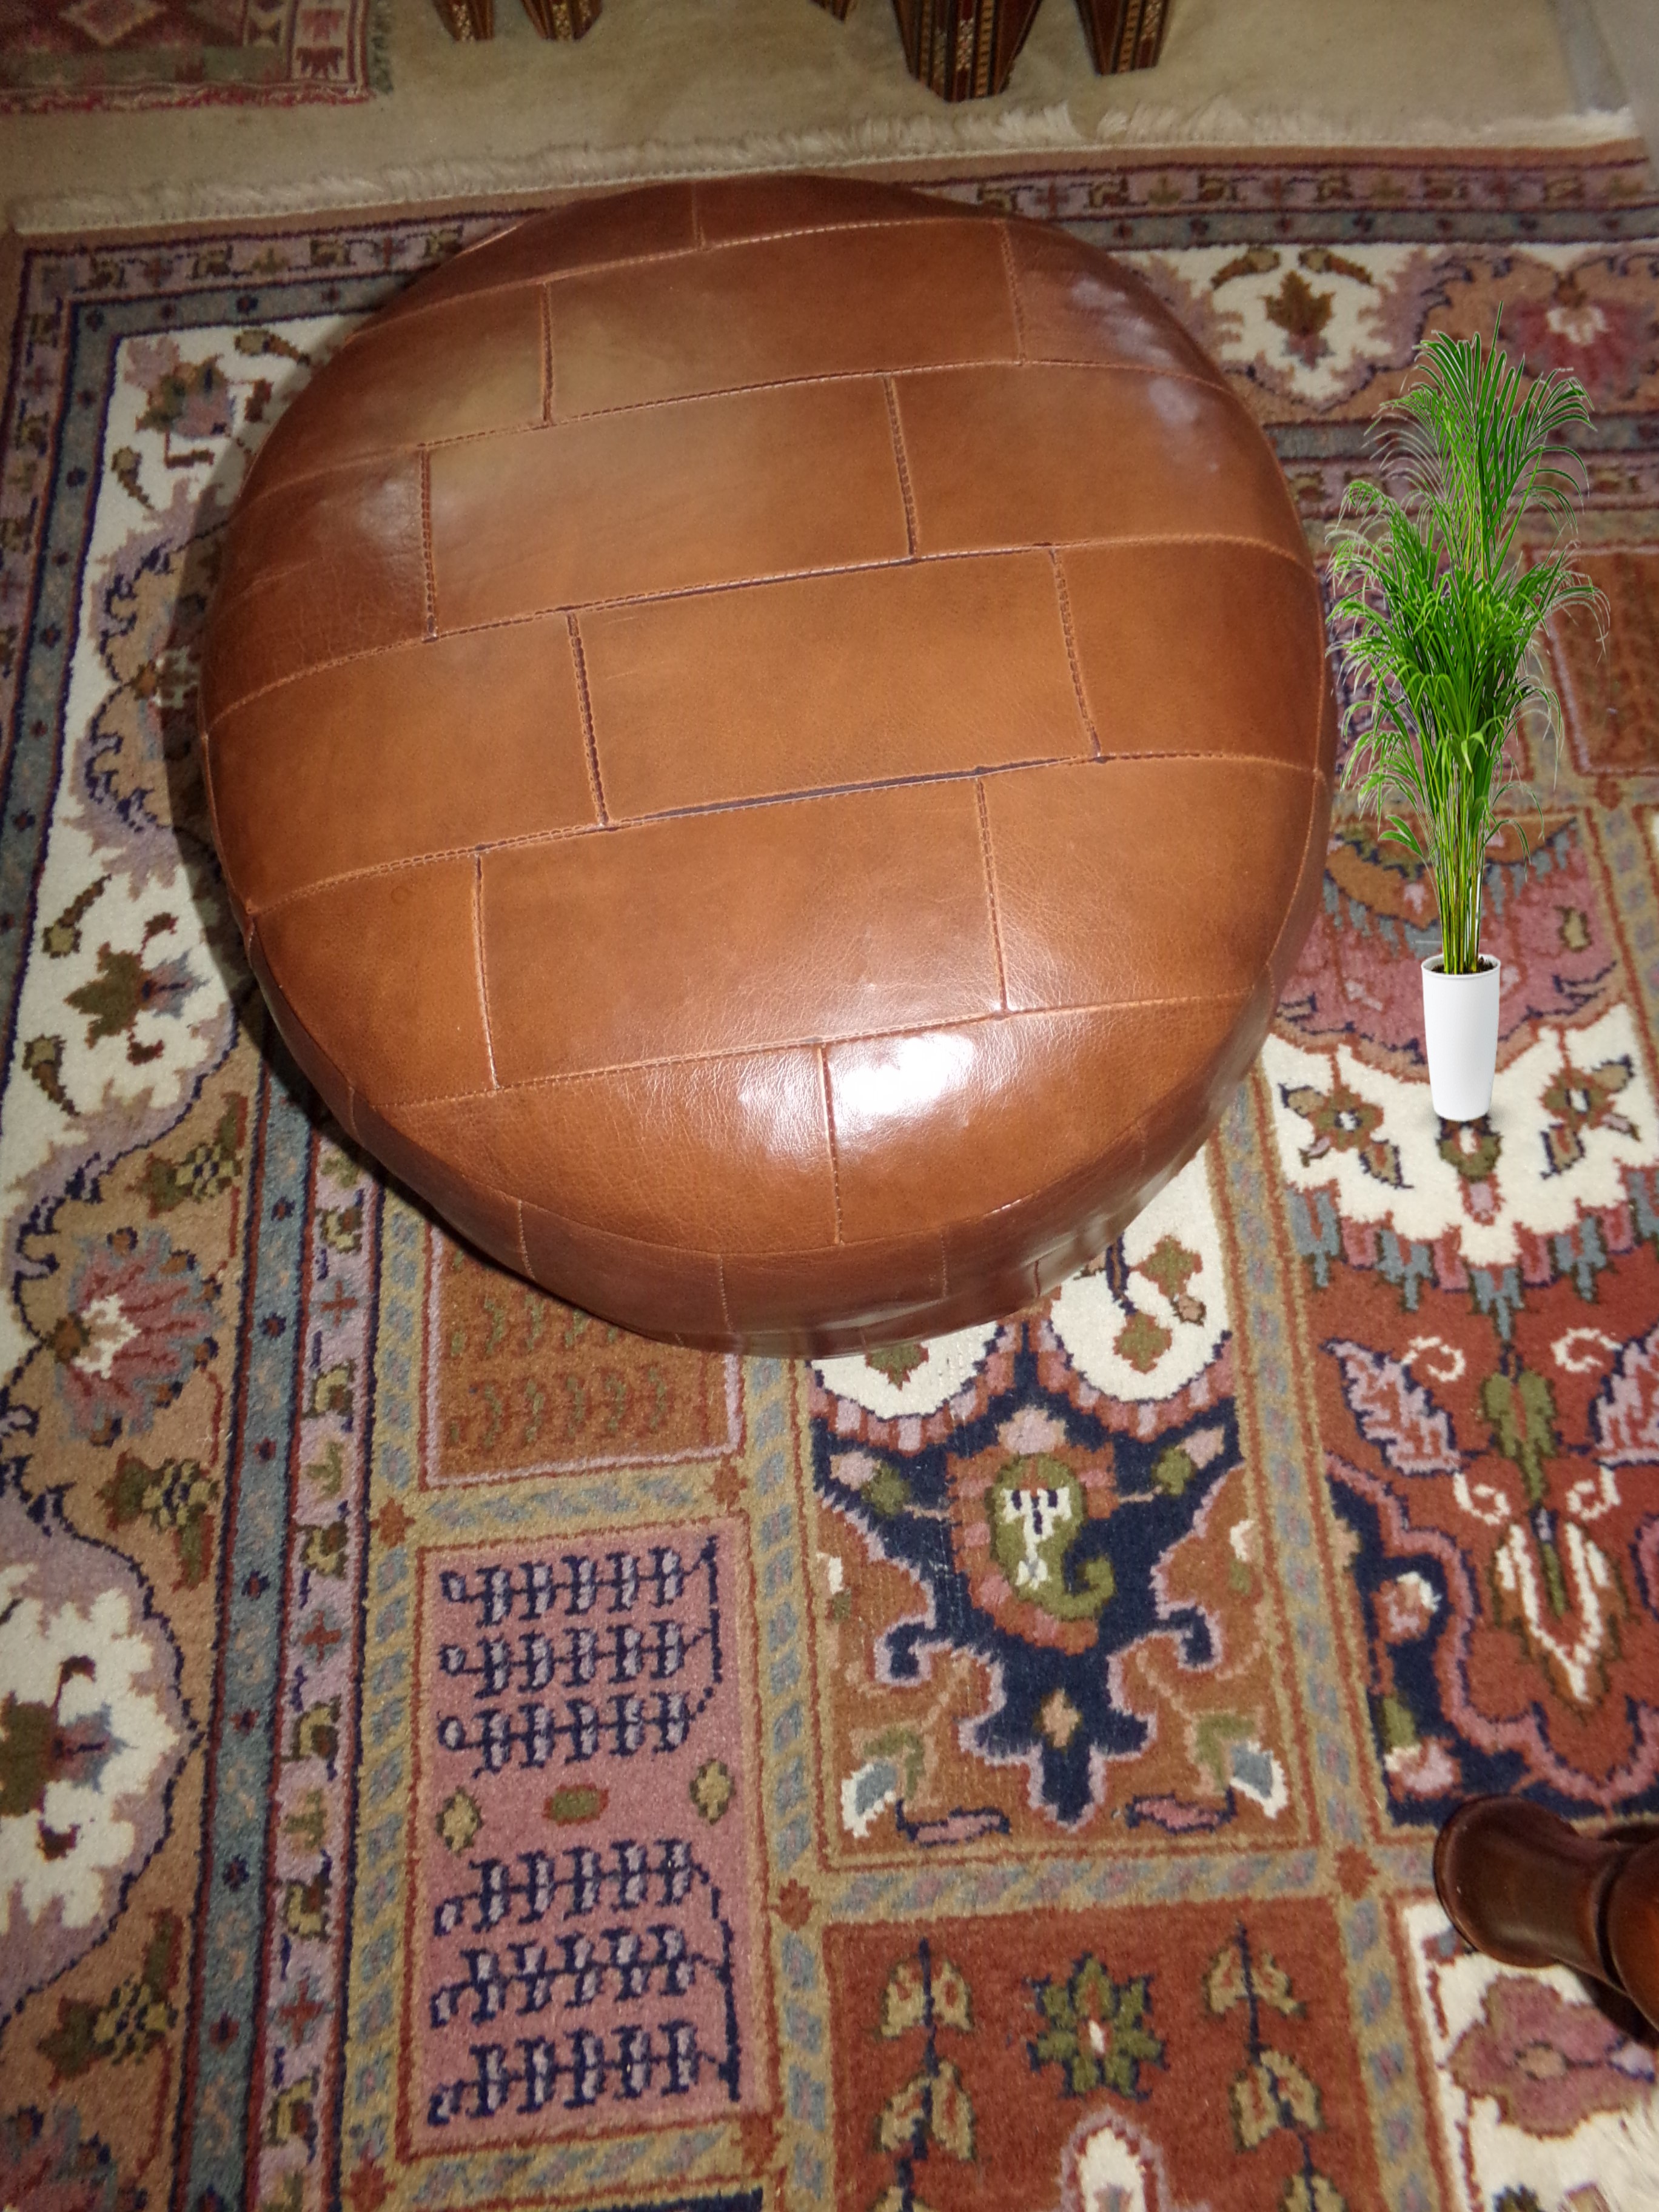 Orientalisches  Marokkanisches Leder-Sitzkissen, edler Sitzpouf